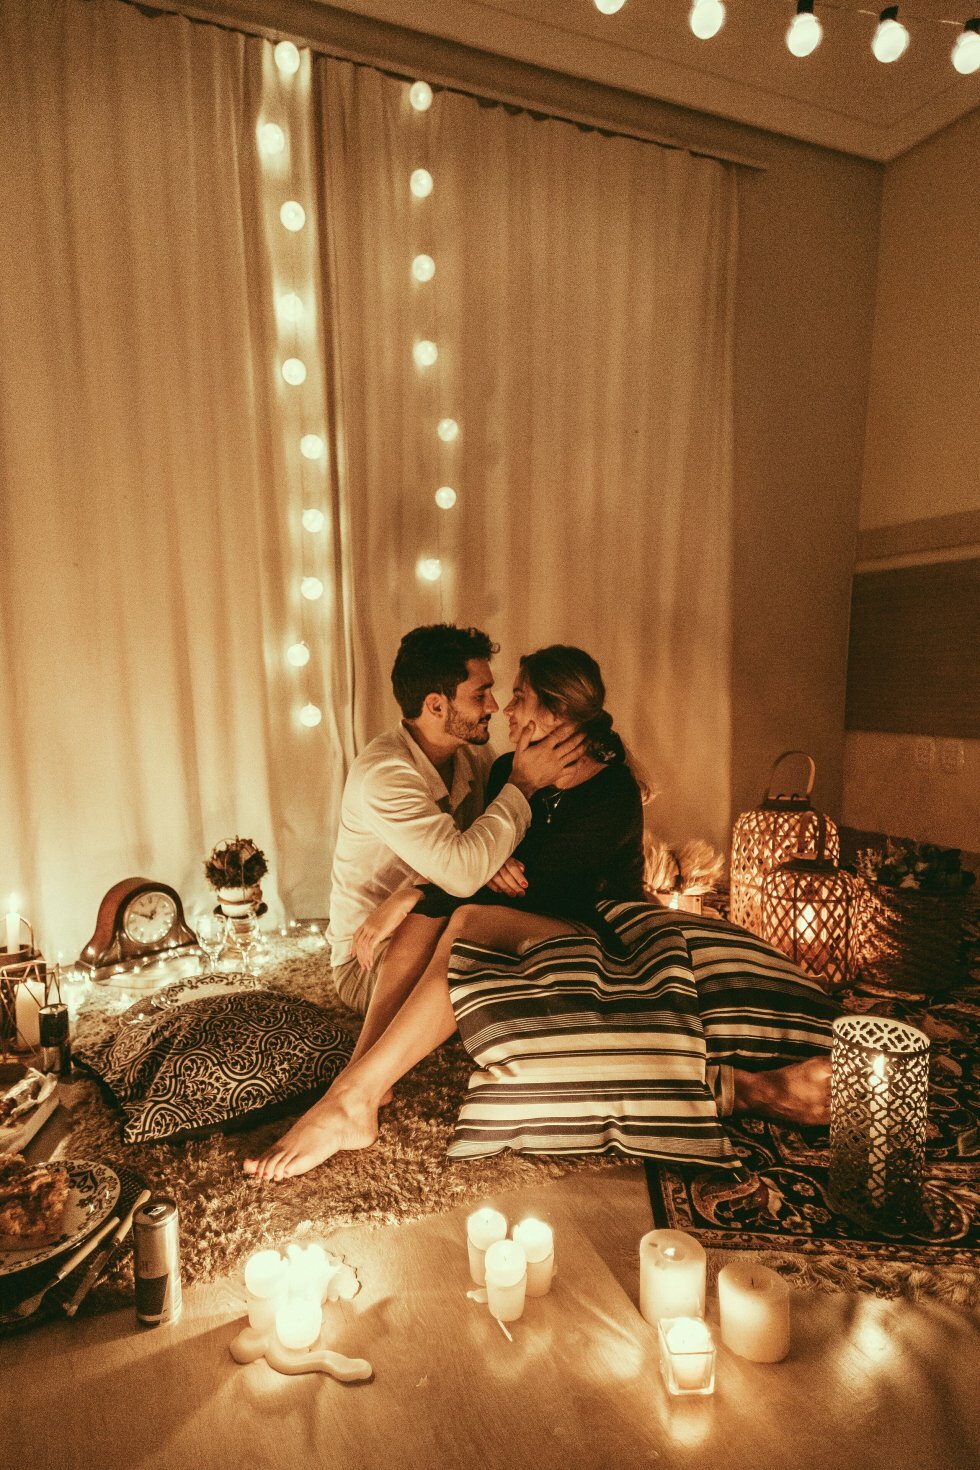 Foto: Pexels - Sådan bliver du en bedre elsker i sengen